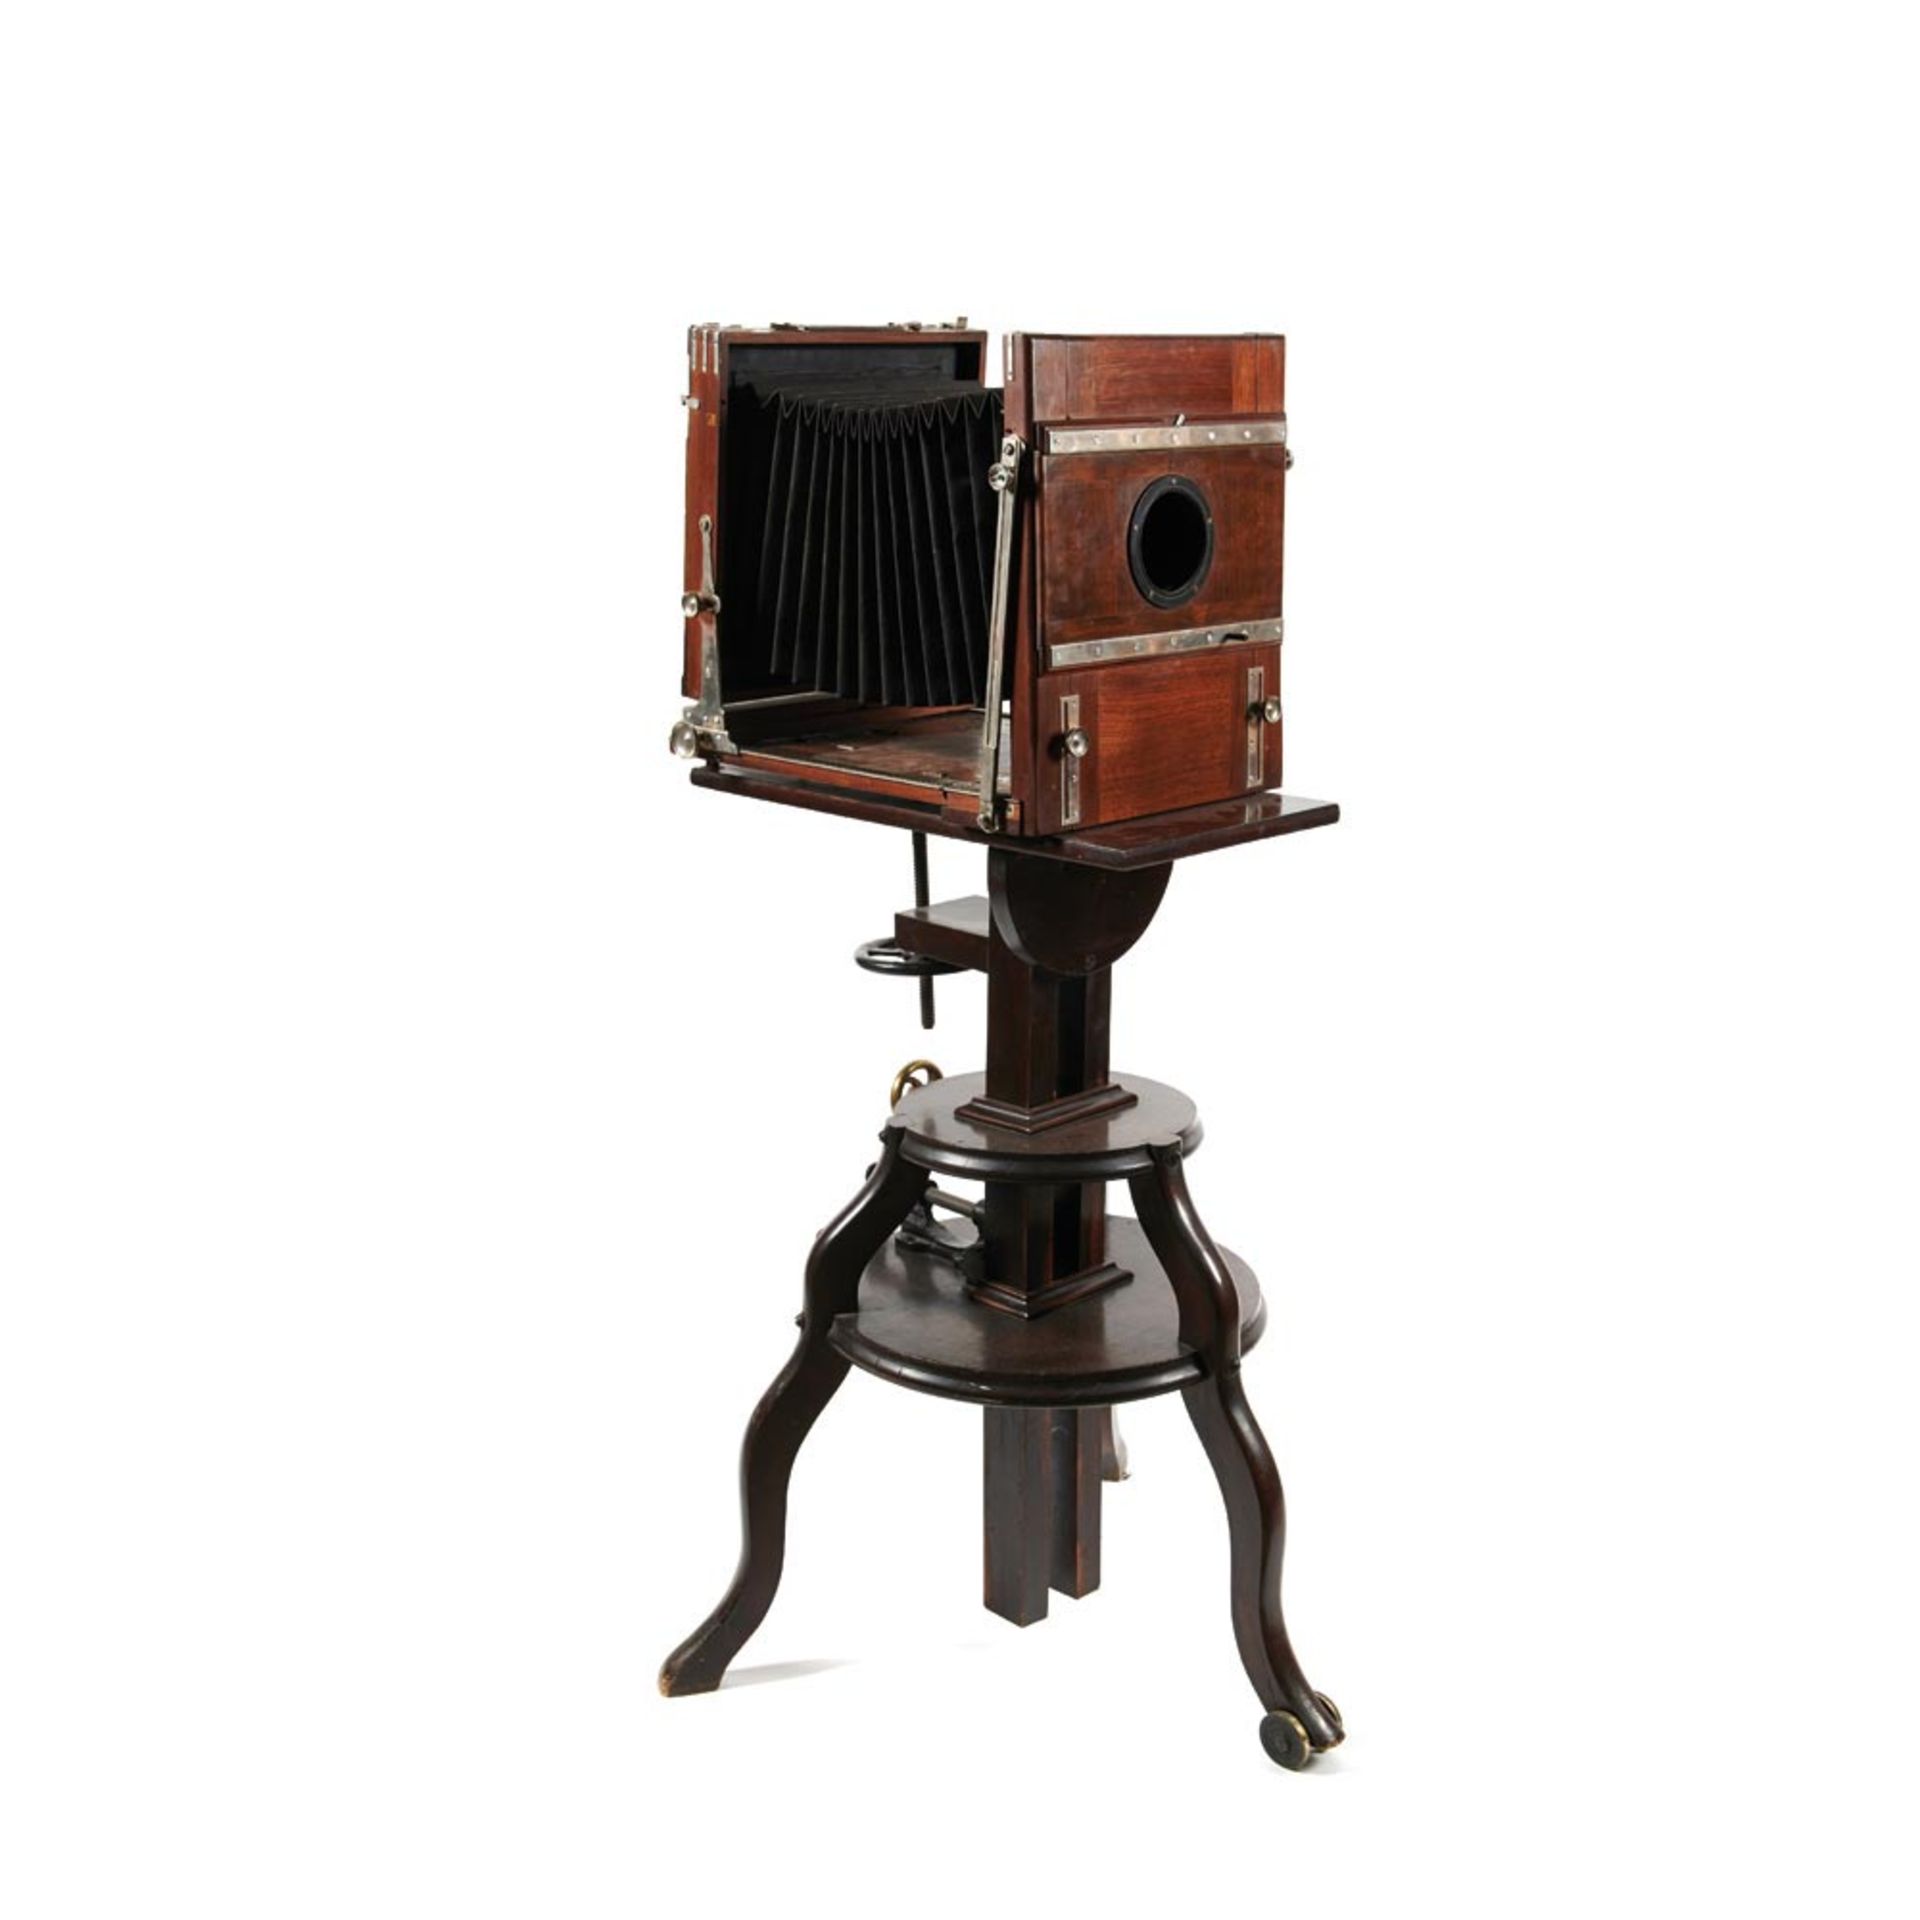 Cámara fotográfica de placas con fuelle en madera sobre trípode con altura regulable mediante